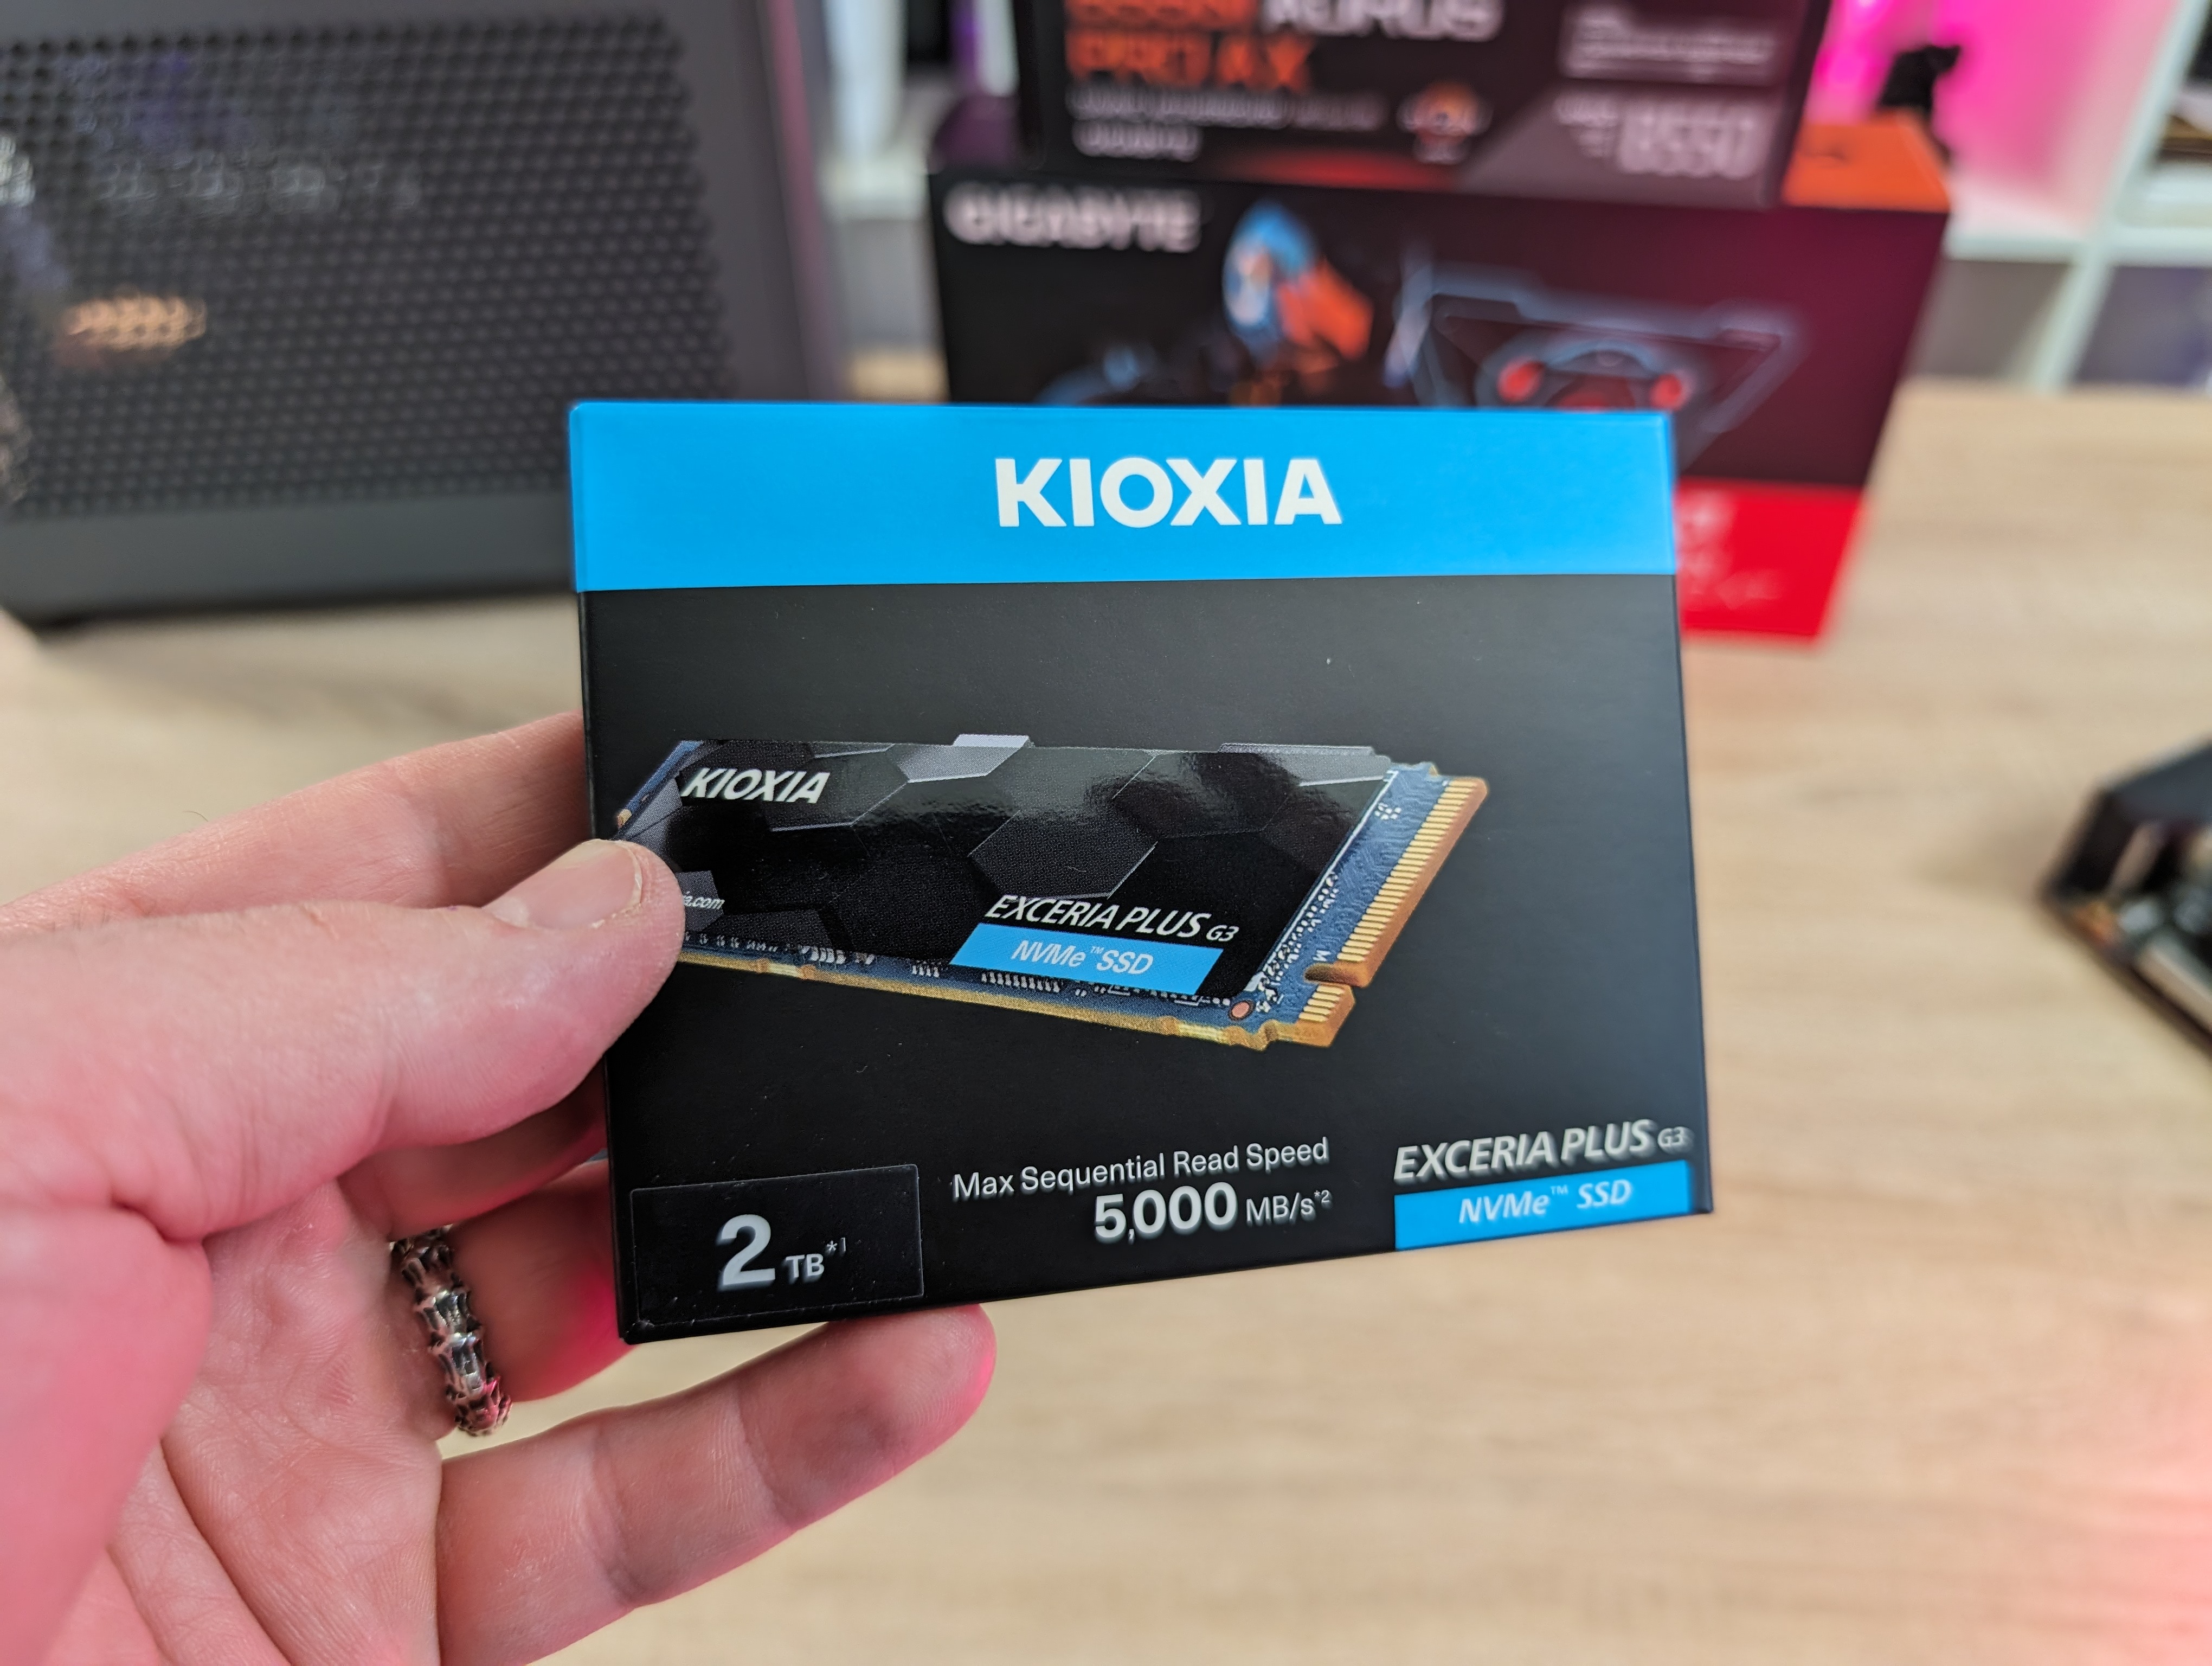 KIOXIA Exceria Plus G3 M.2 SSD